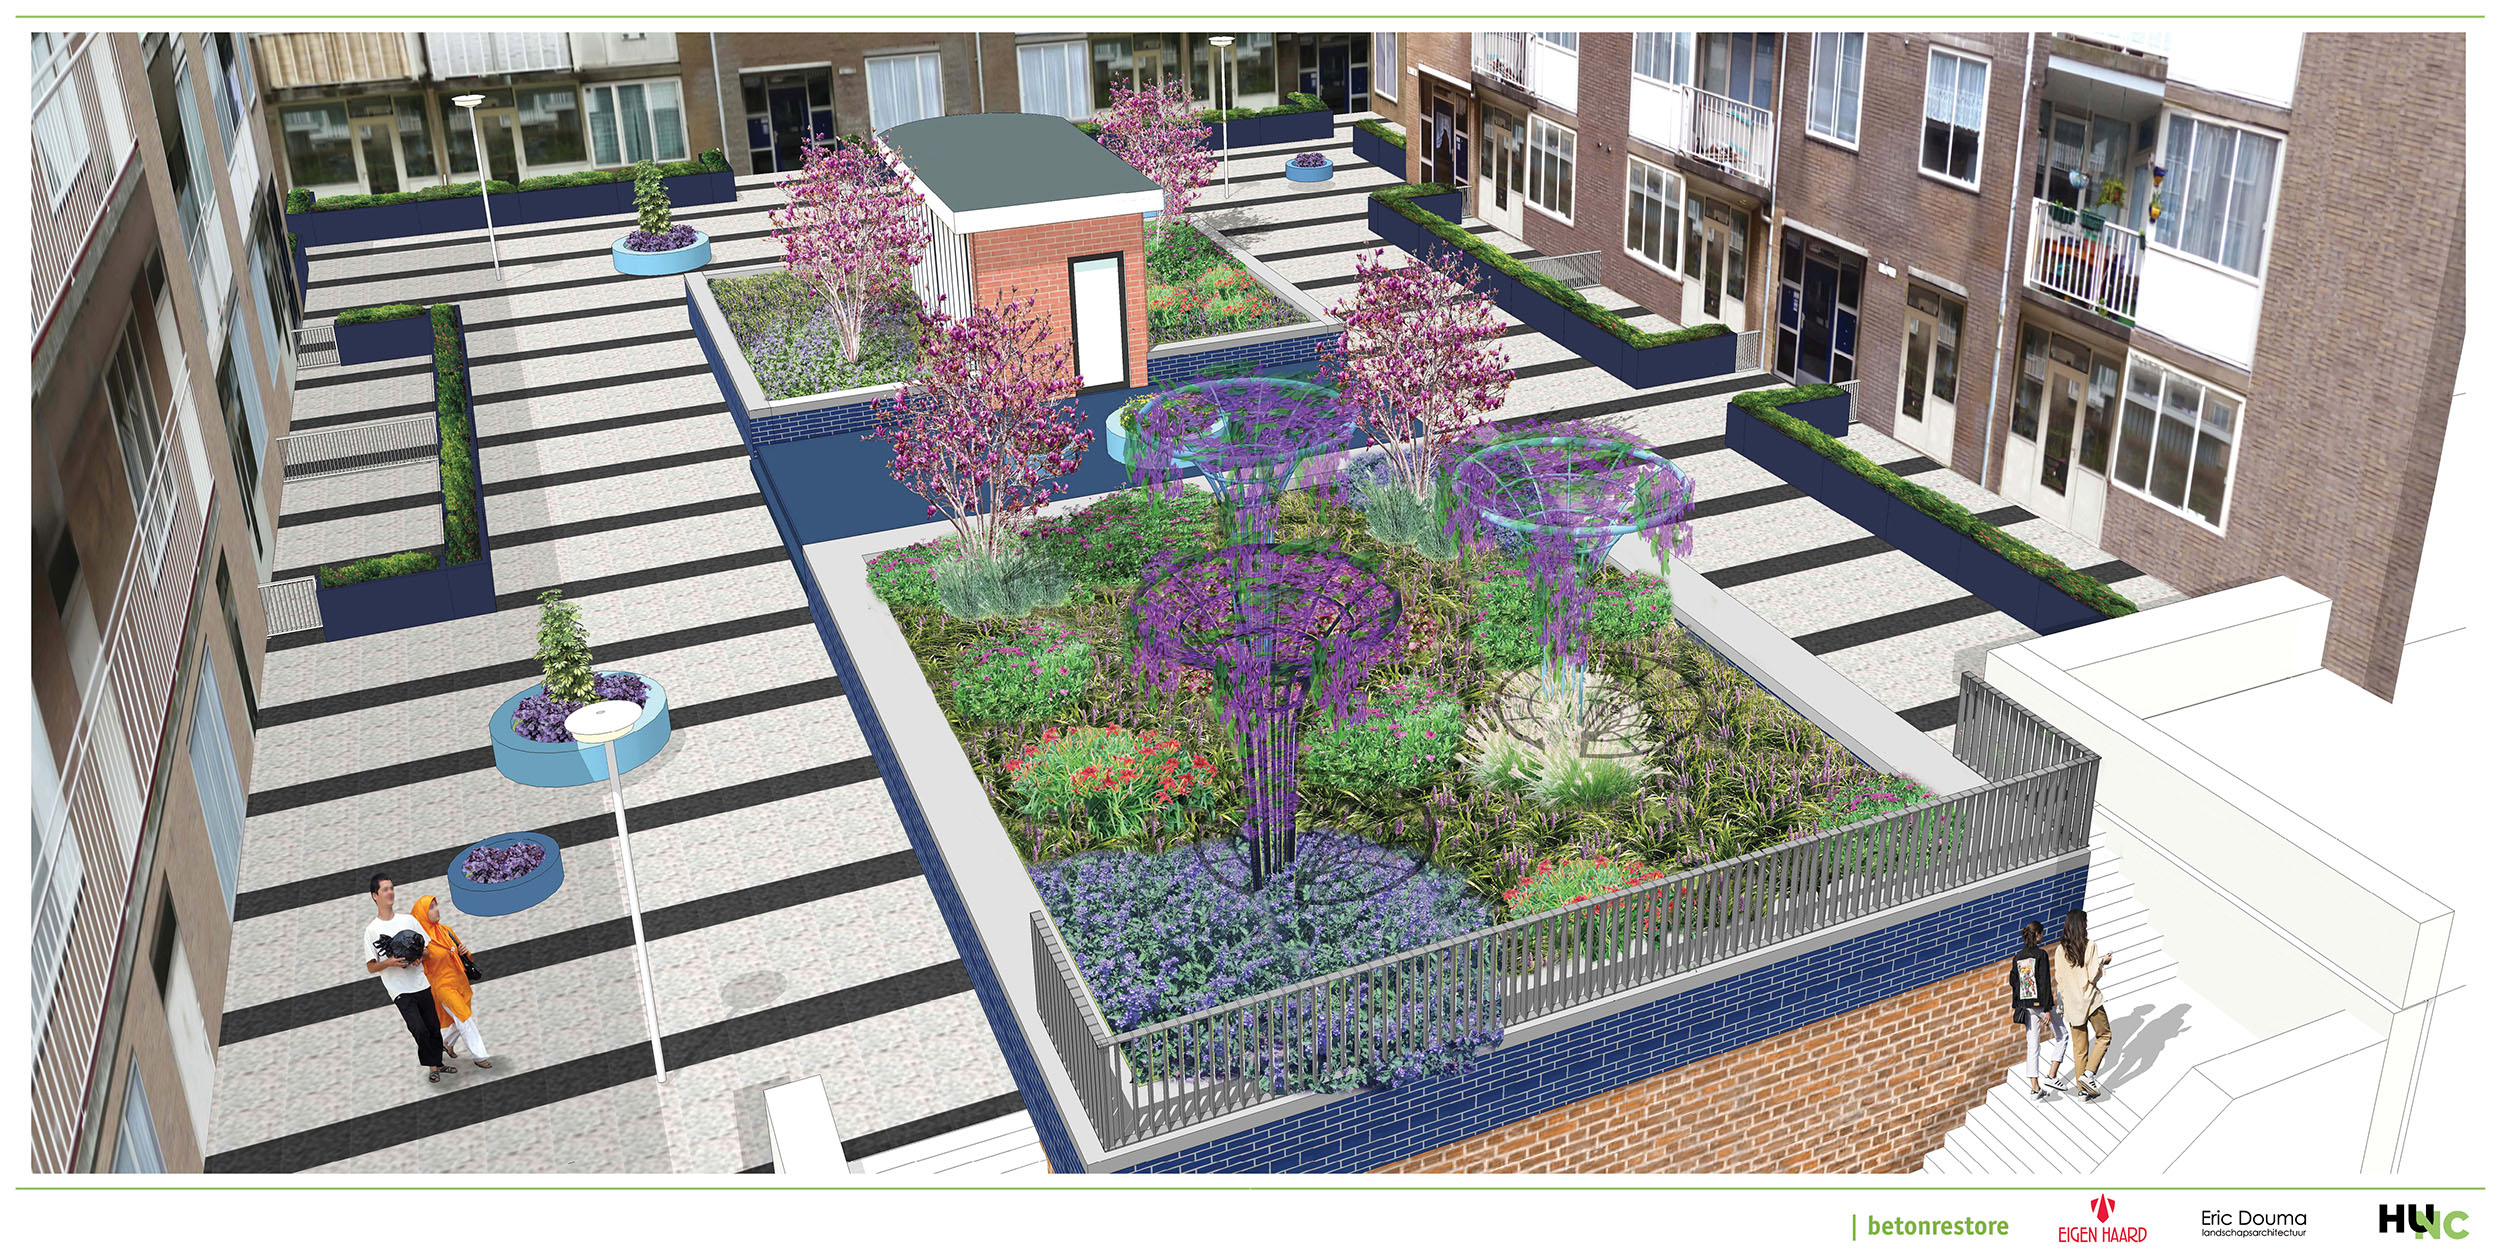 Djakartaterras redesign communal garden